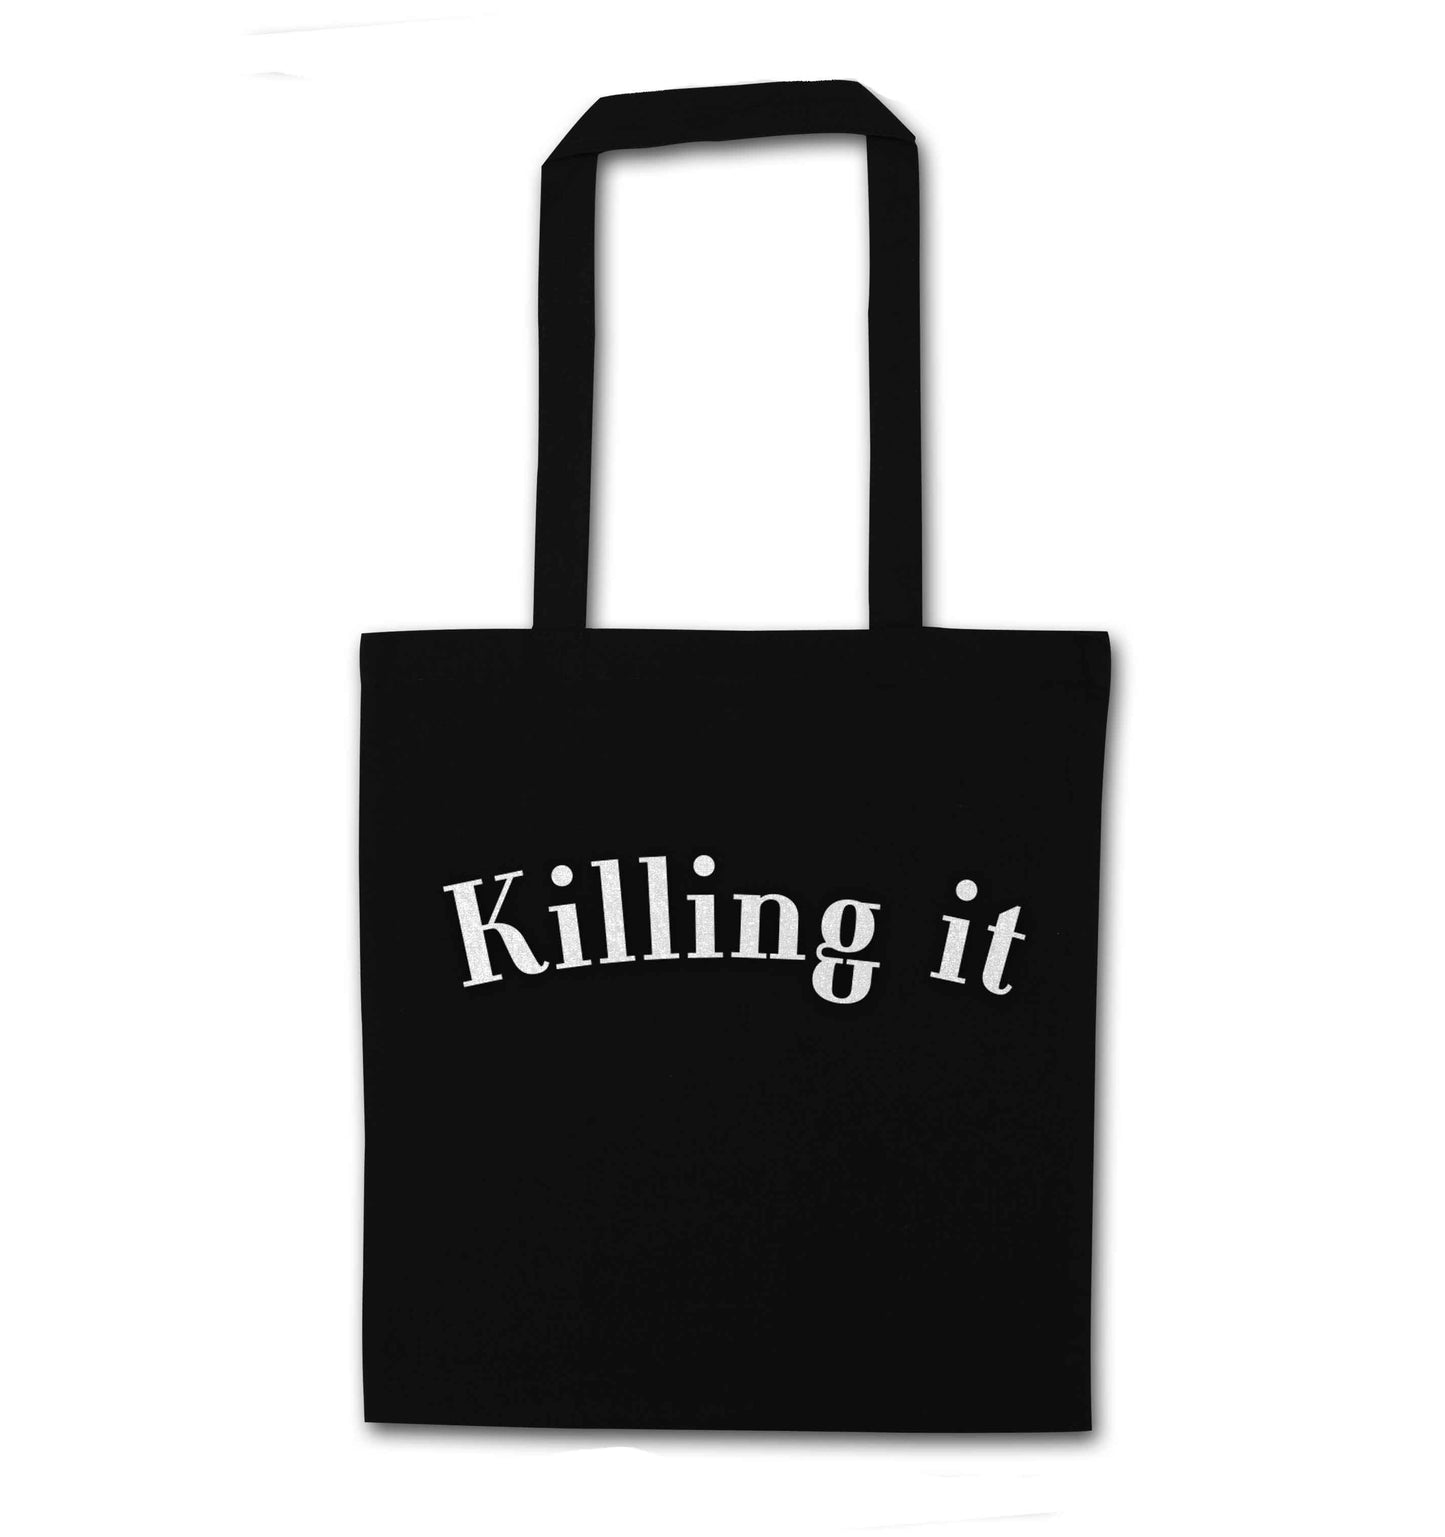 Killing it black tote bag